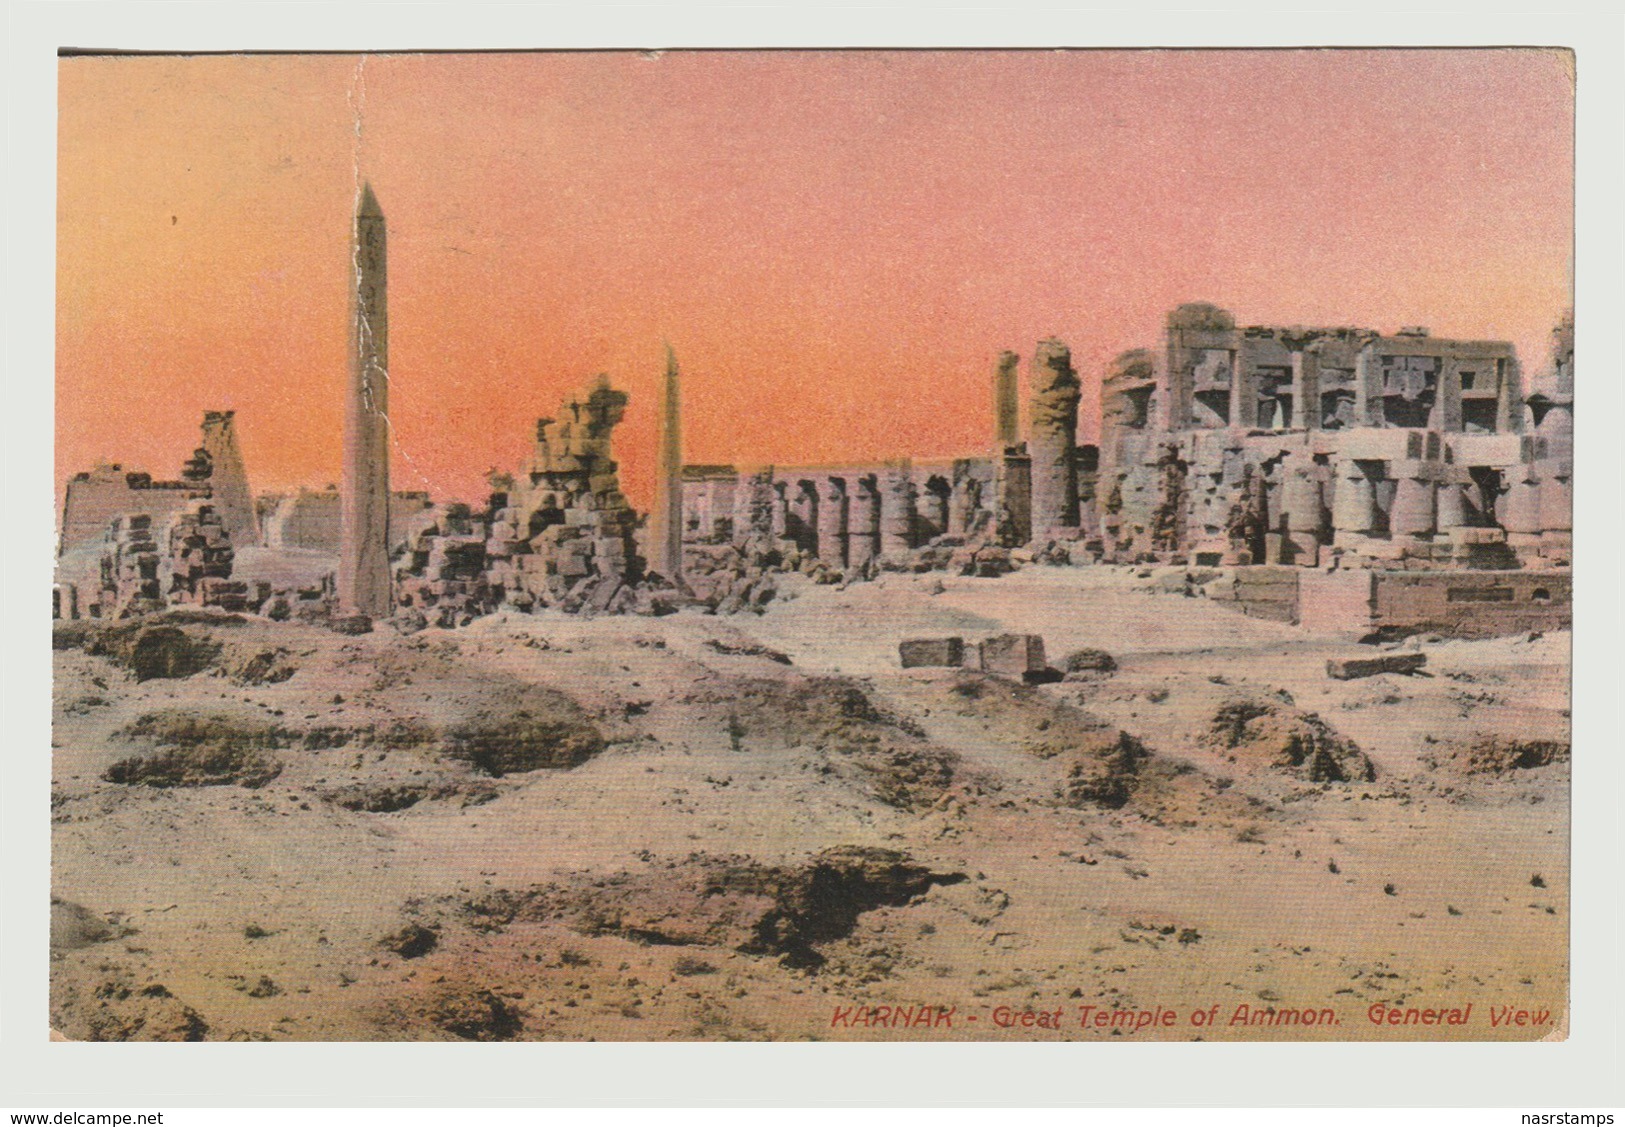 Egypt - Vintage Post Card - KARNAK - Registered To Italy - Egyptology